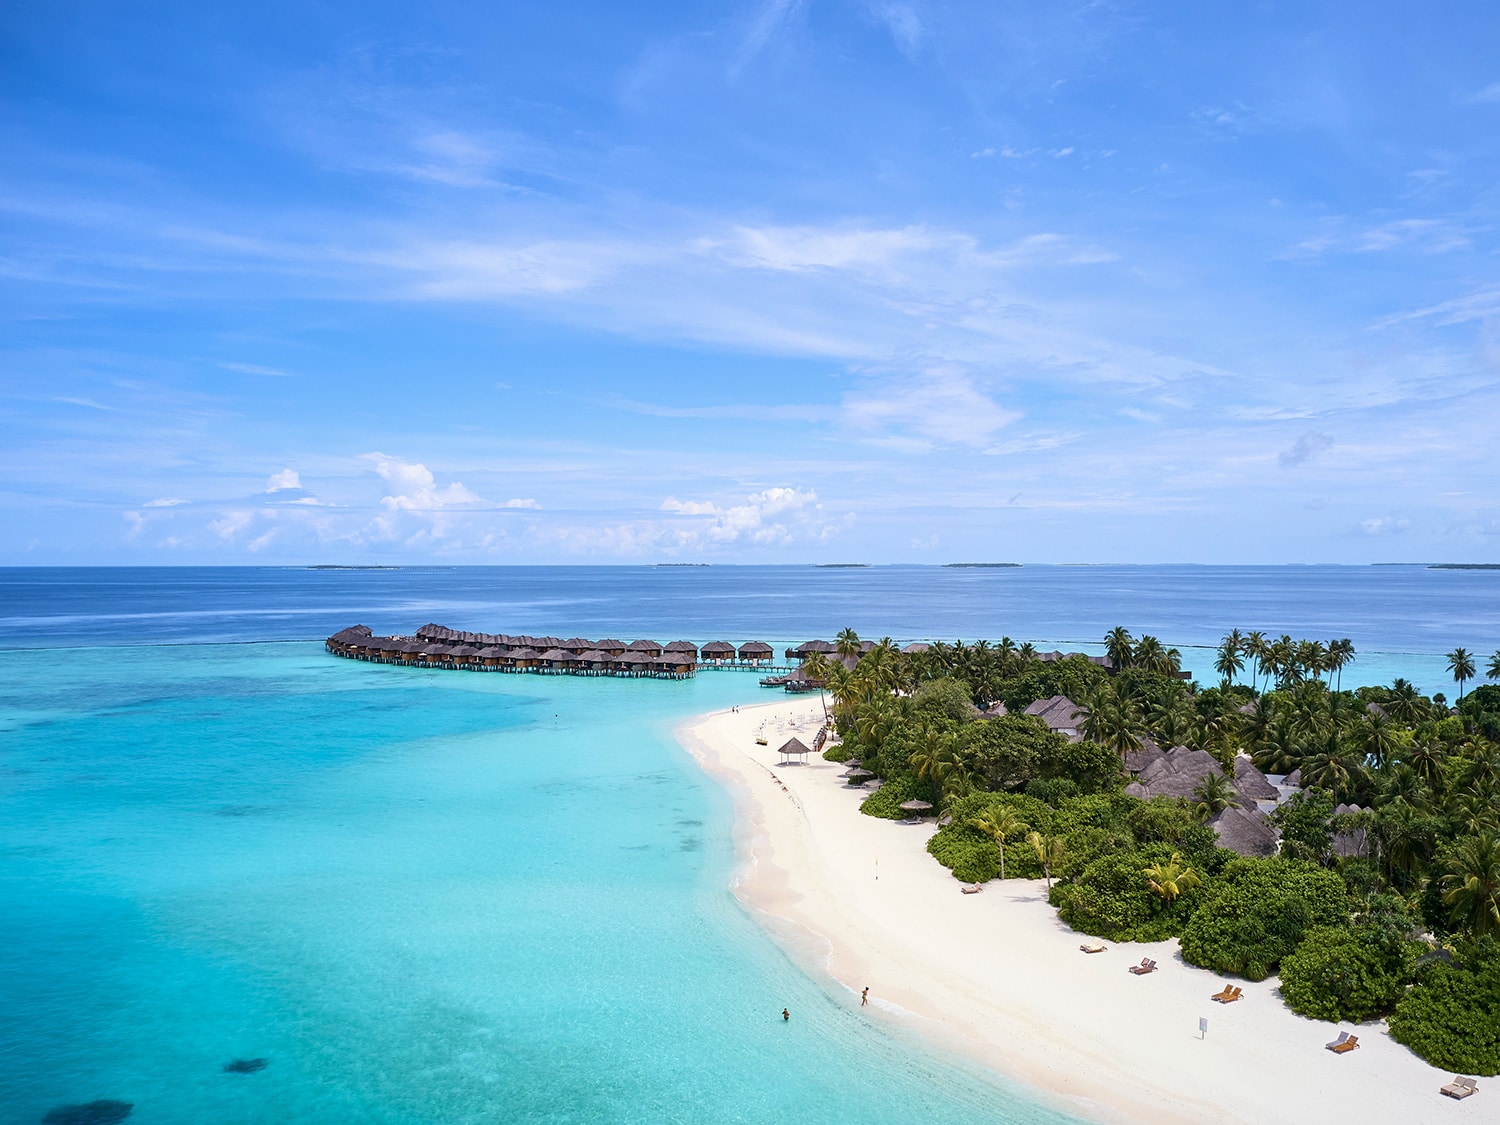 A beach view of Sun Siyam Ira Fushi in the Maldives